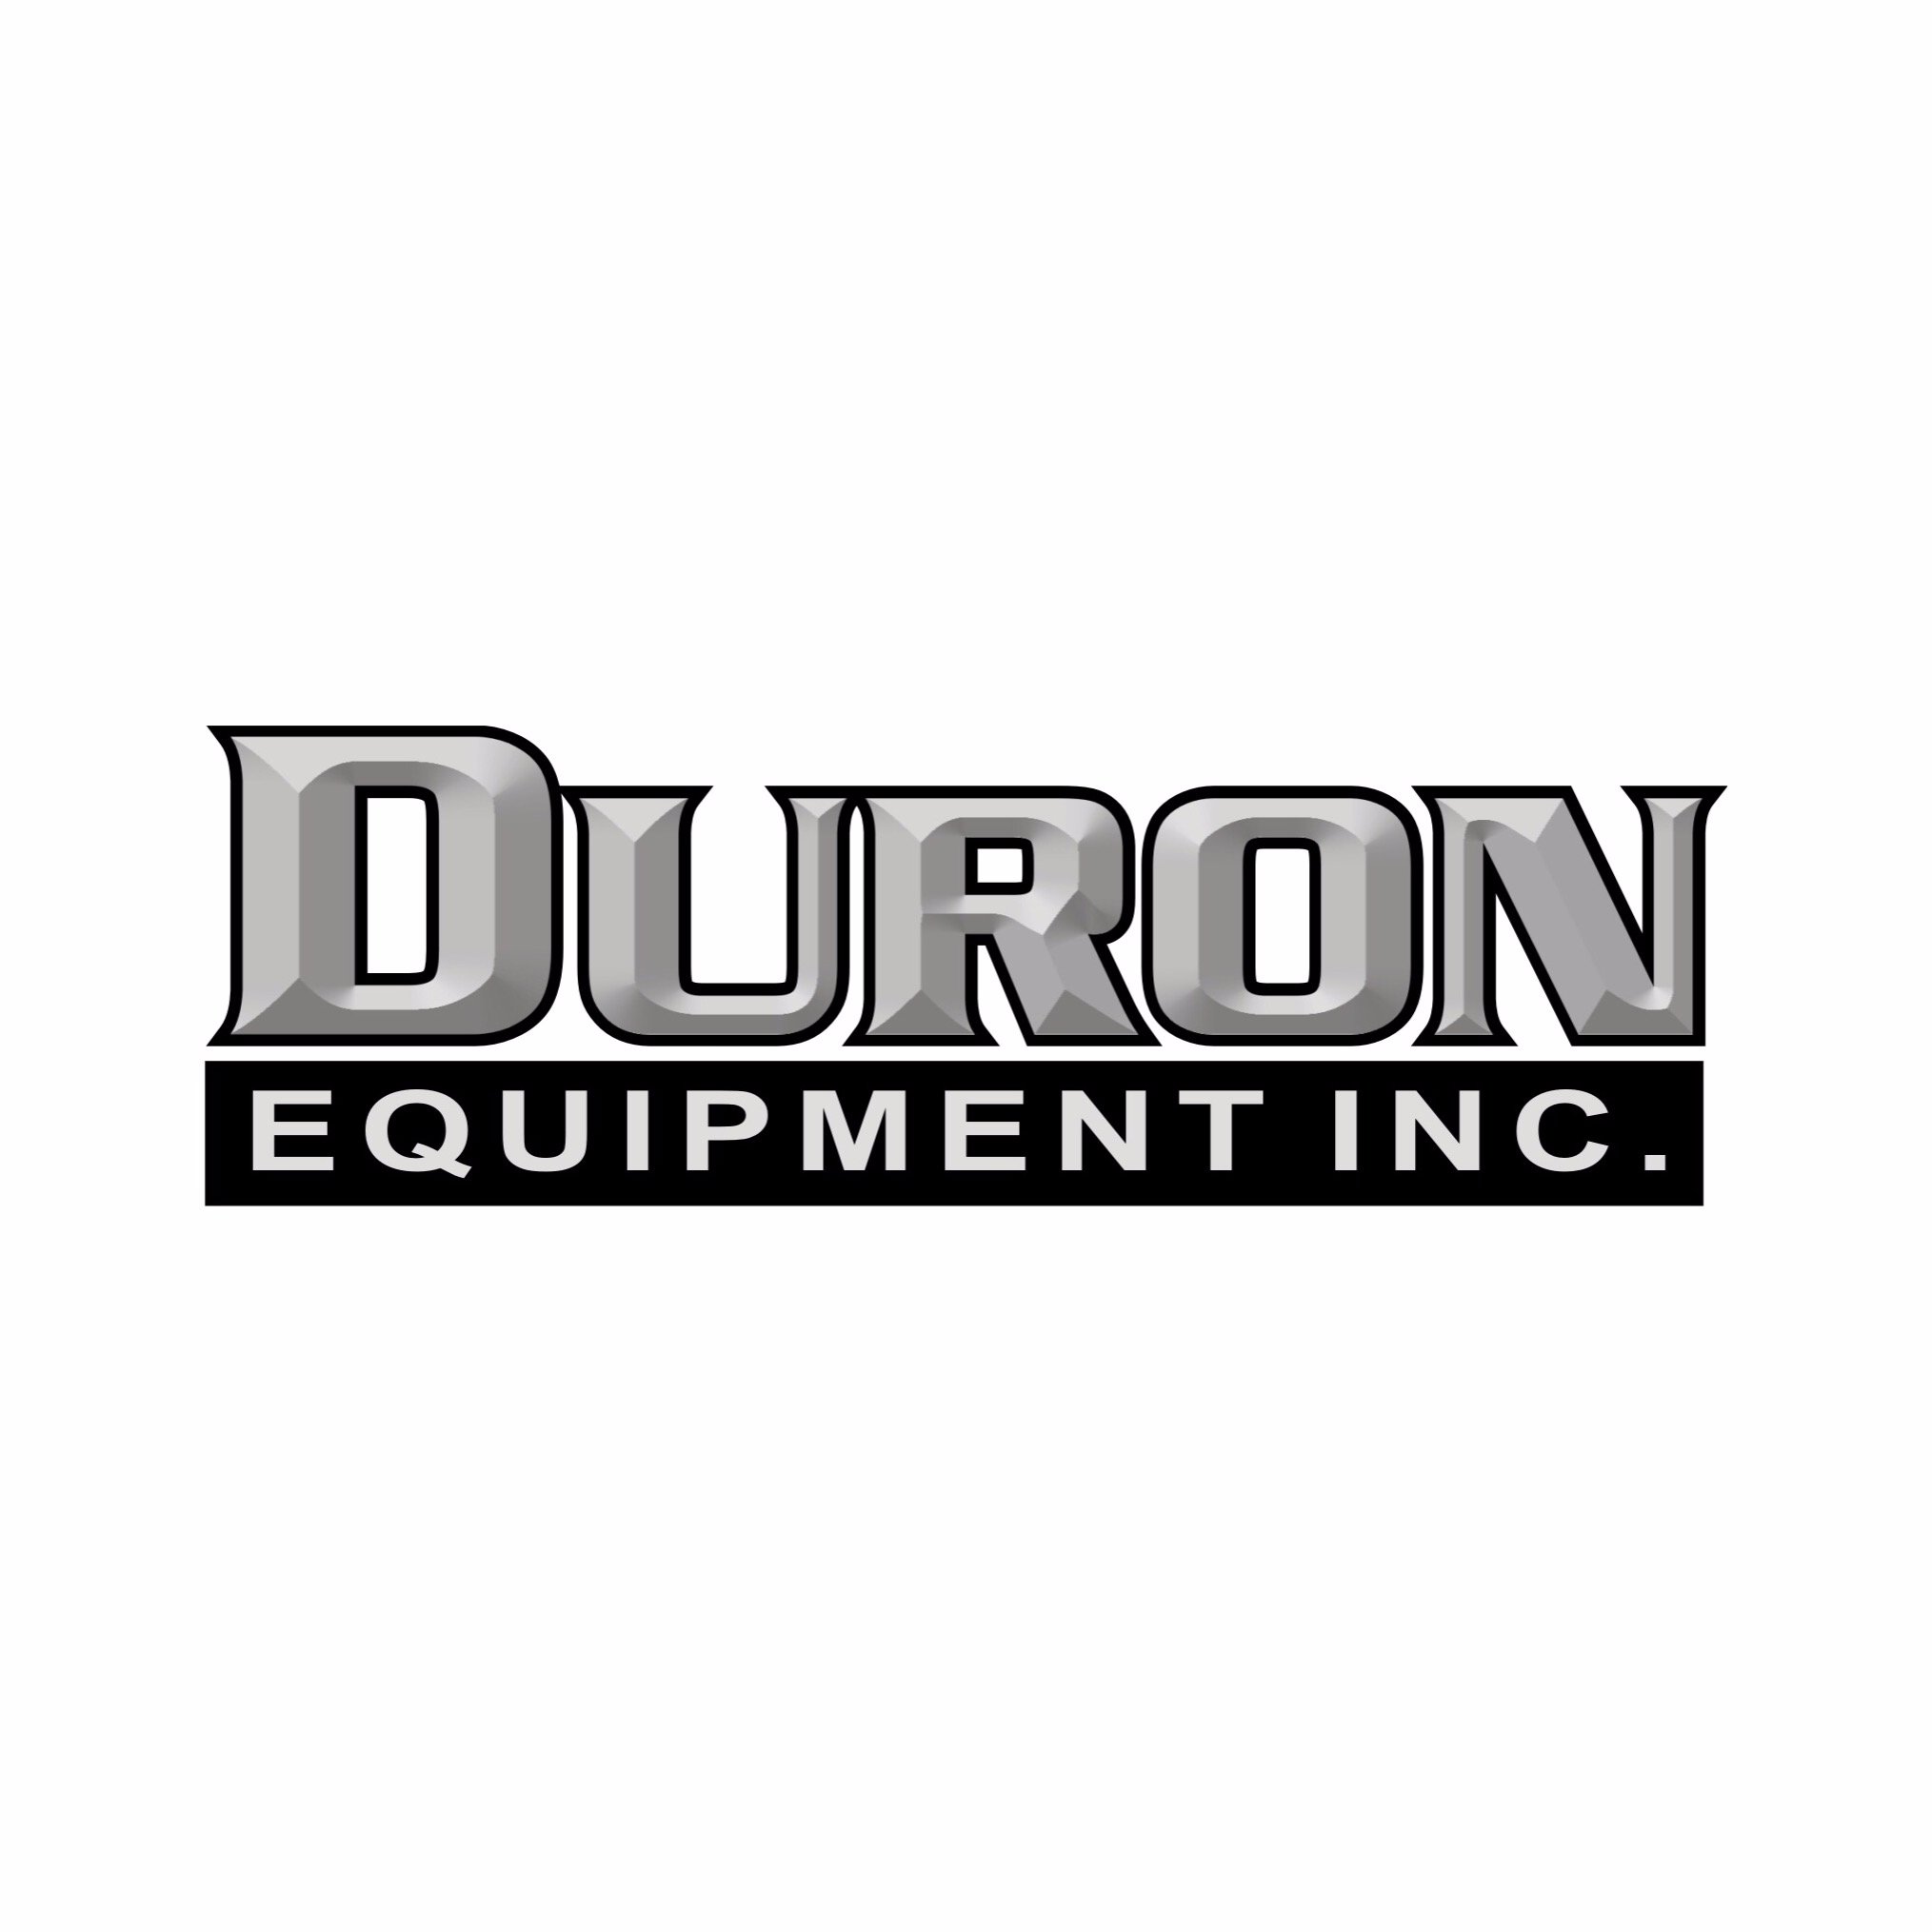 Duron Equipment Inc.